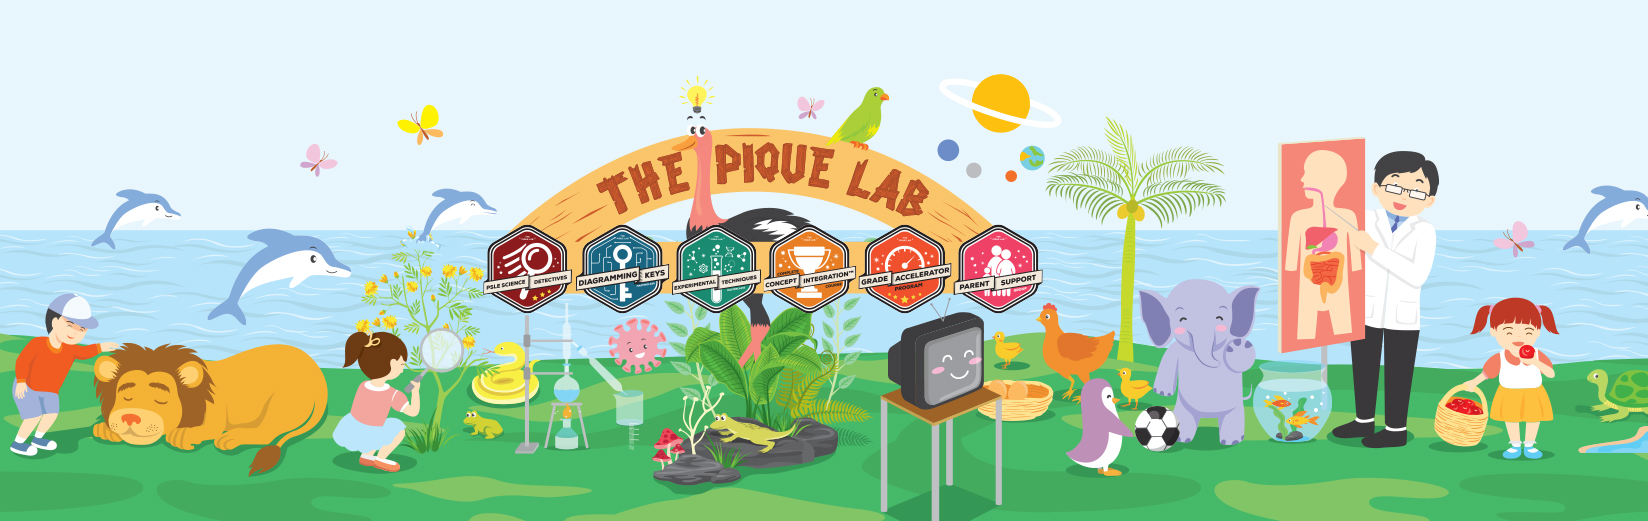 The Pique Lab